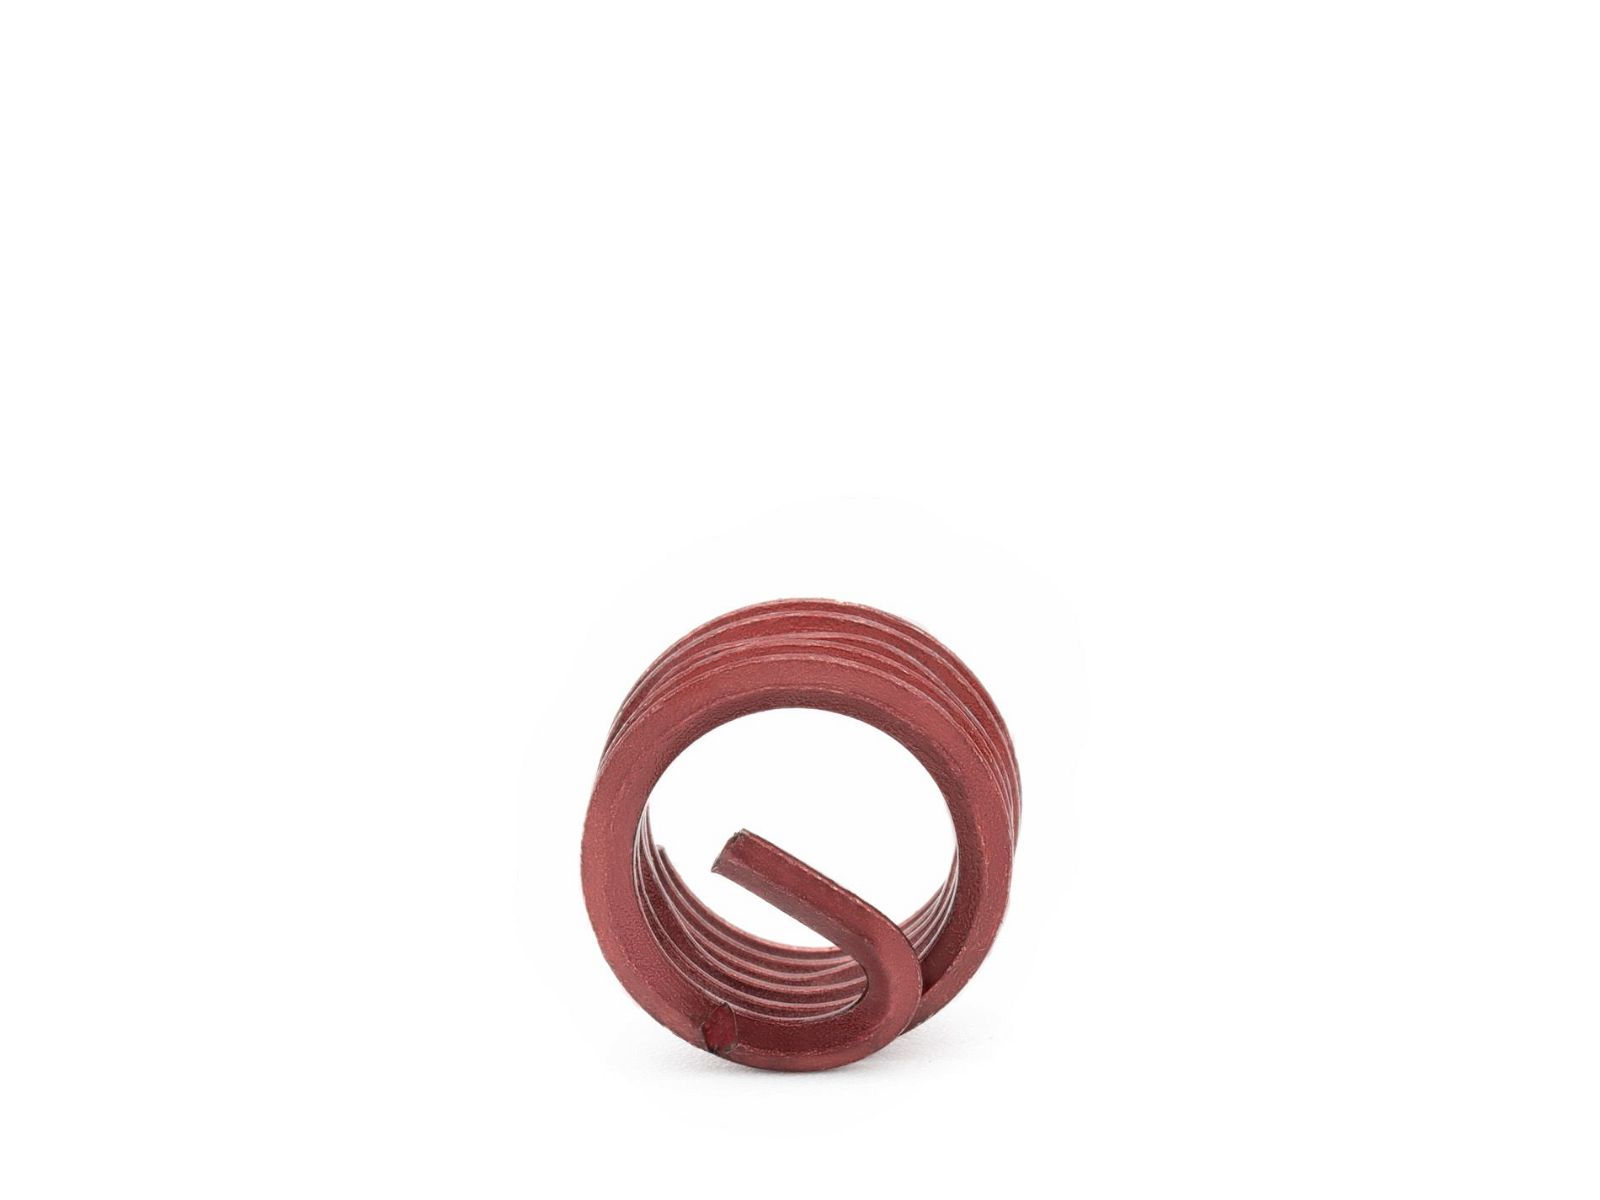 BaerCoil Wire Thread Inserts UNC 7/16 x 14 - 1.0 D (11.11 mm) - screw grip (screw locking) - 100 pcs.